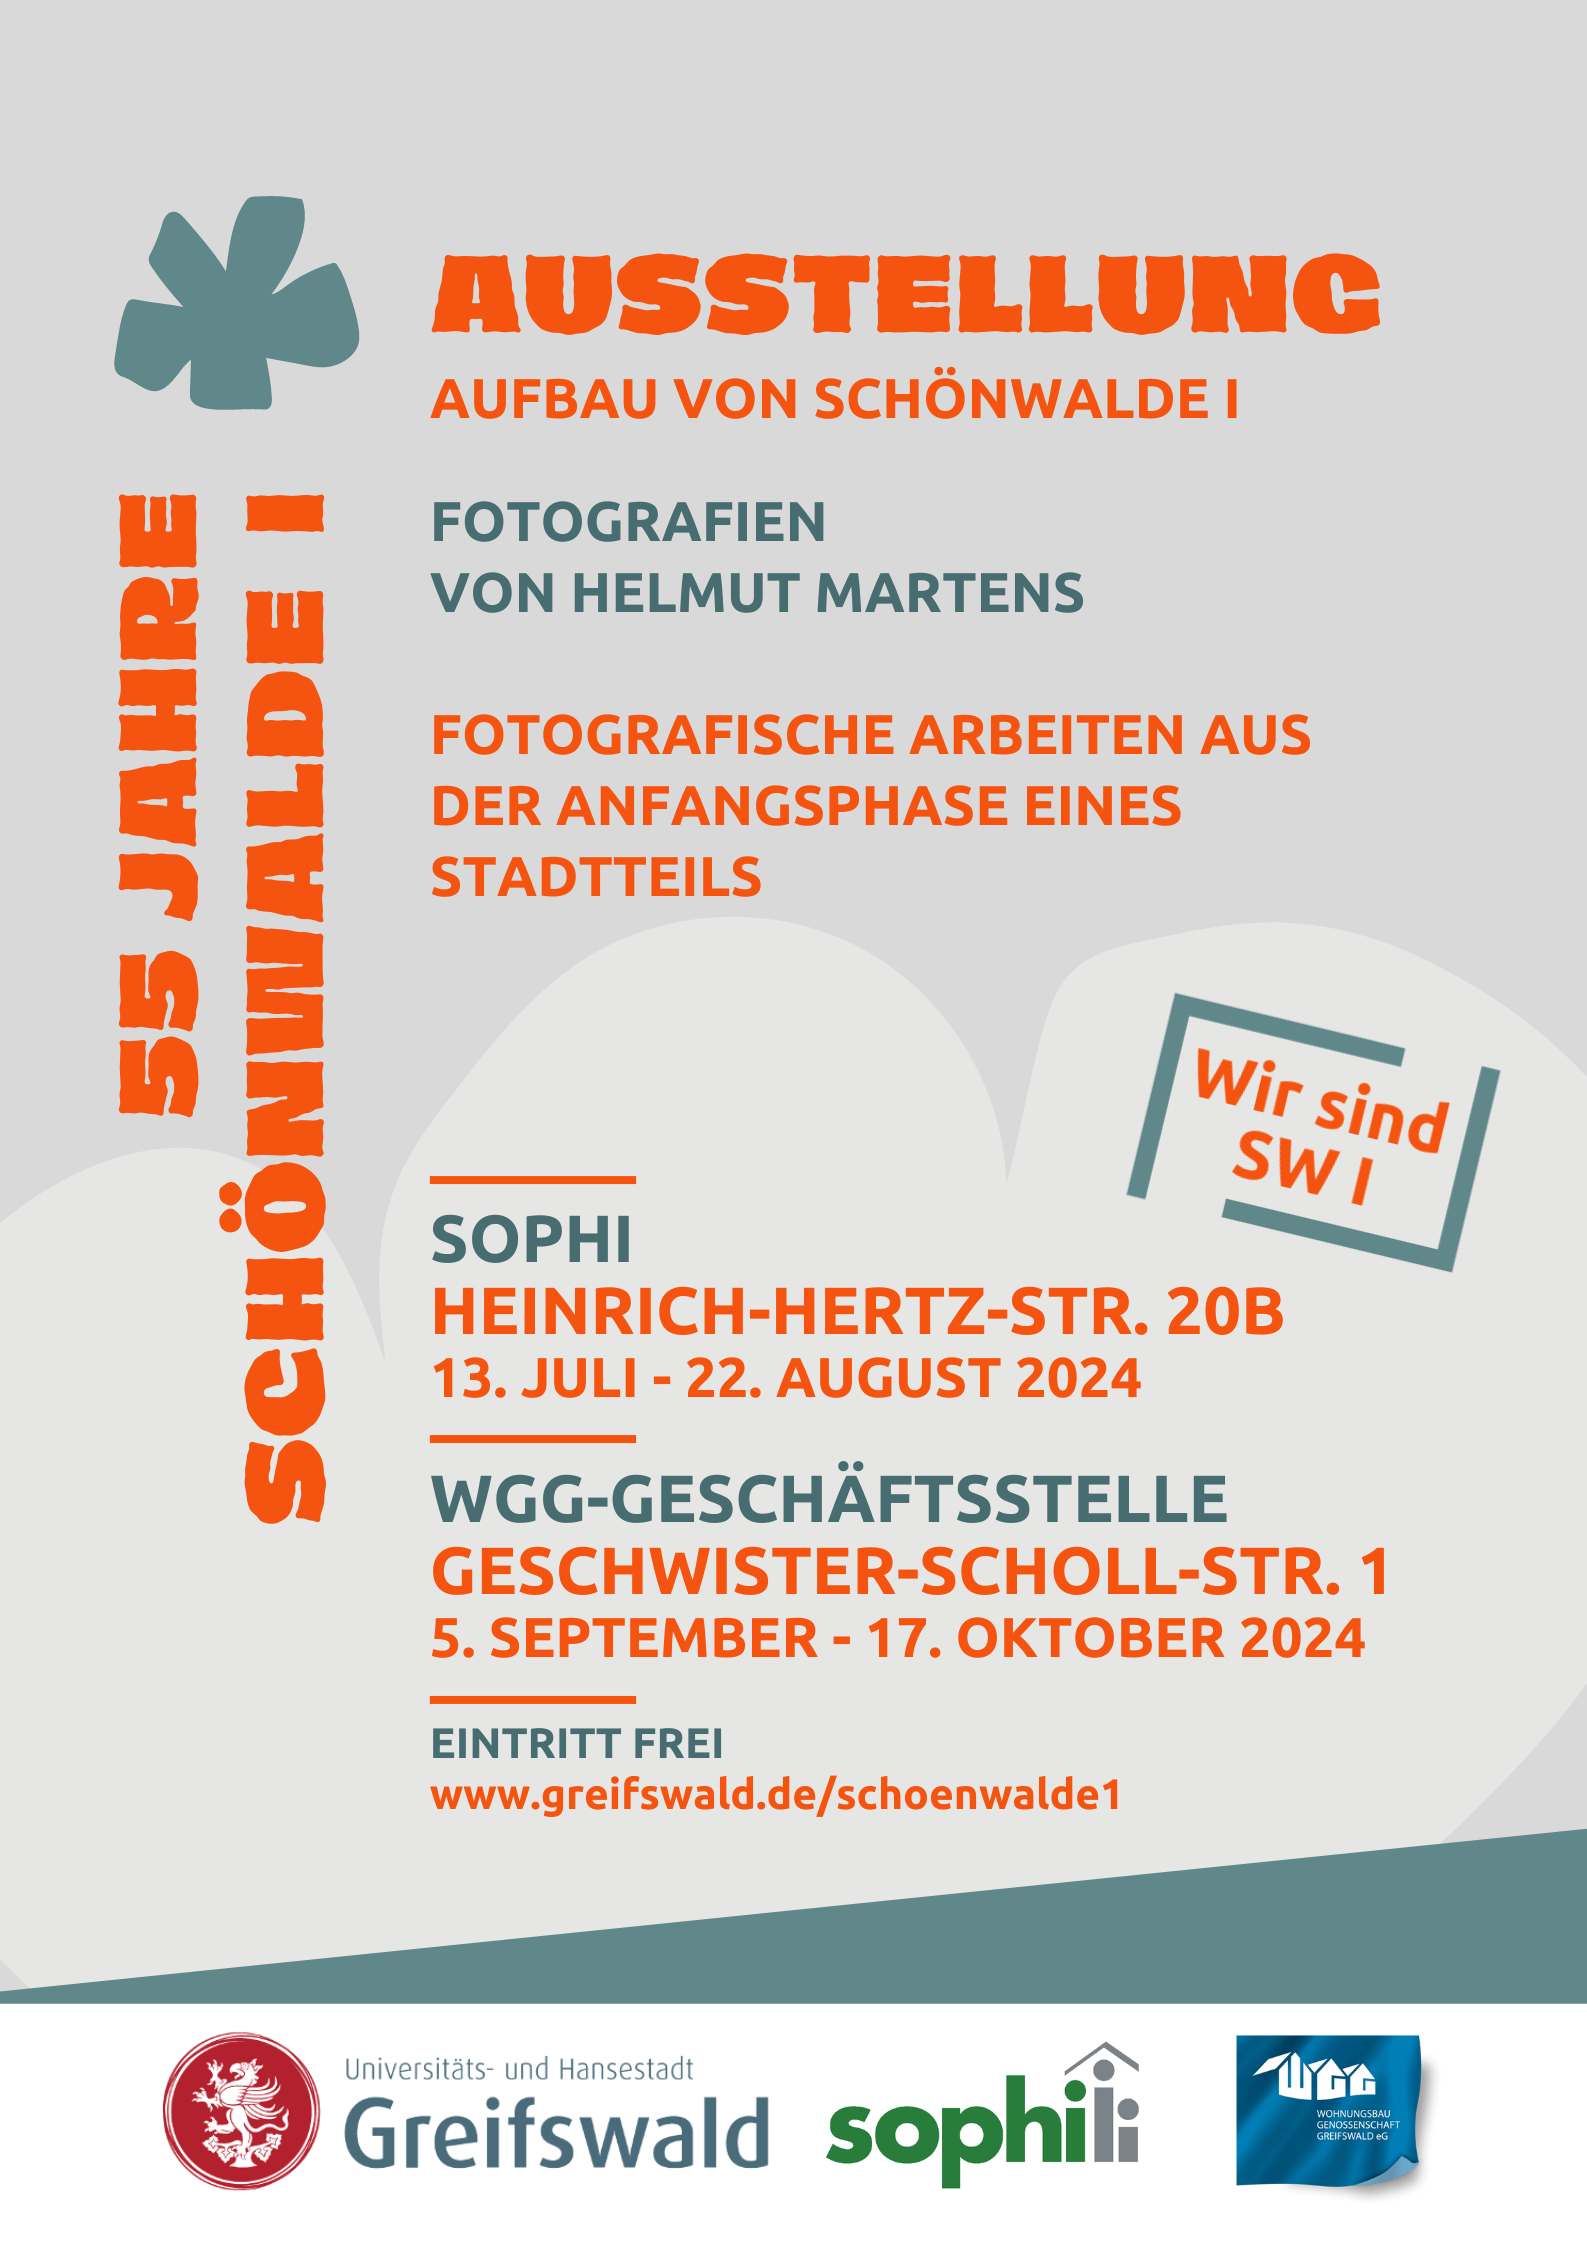 Ausstellung "Aufbau von Schönwalde I" vom 13.07. bis 22.08. in der SoPHI in der Heinrich-Hertz-Straße 20b und vom 05.09. bis 17.10. in der WGG-Geschäftsstelle in der Geschwister-Scholl-Straße 1